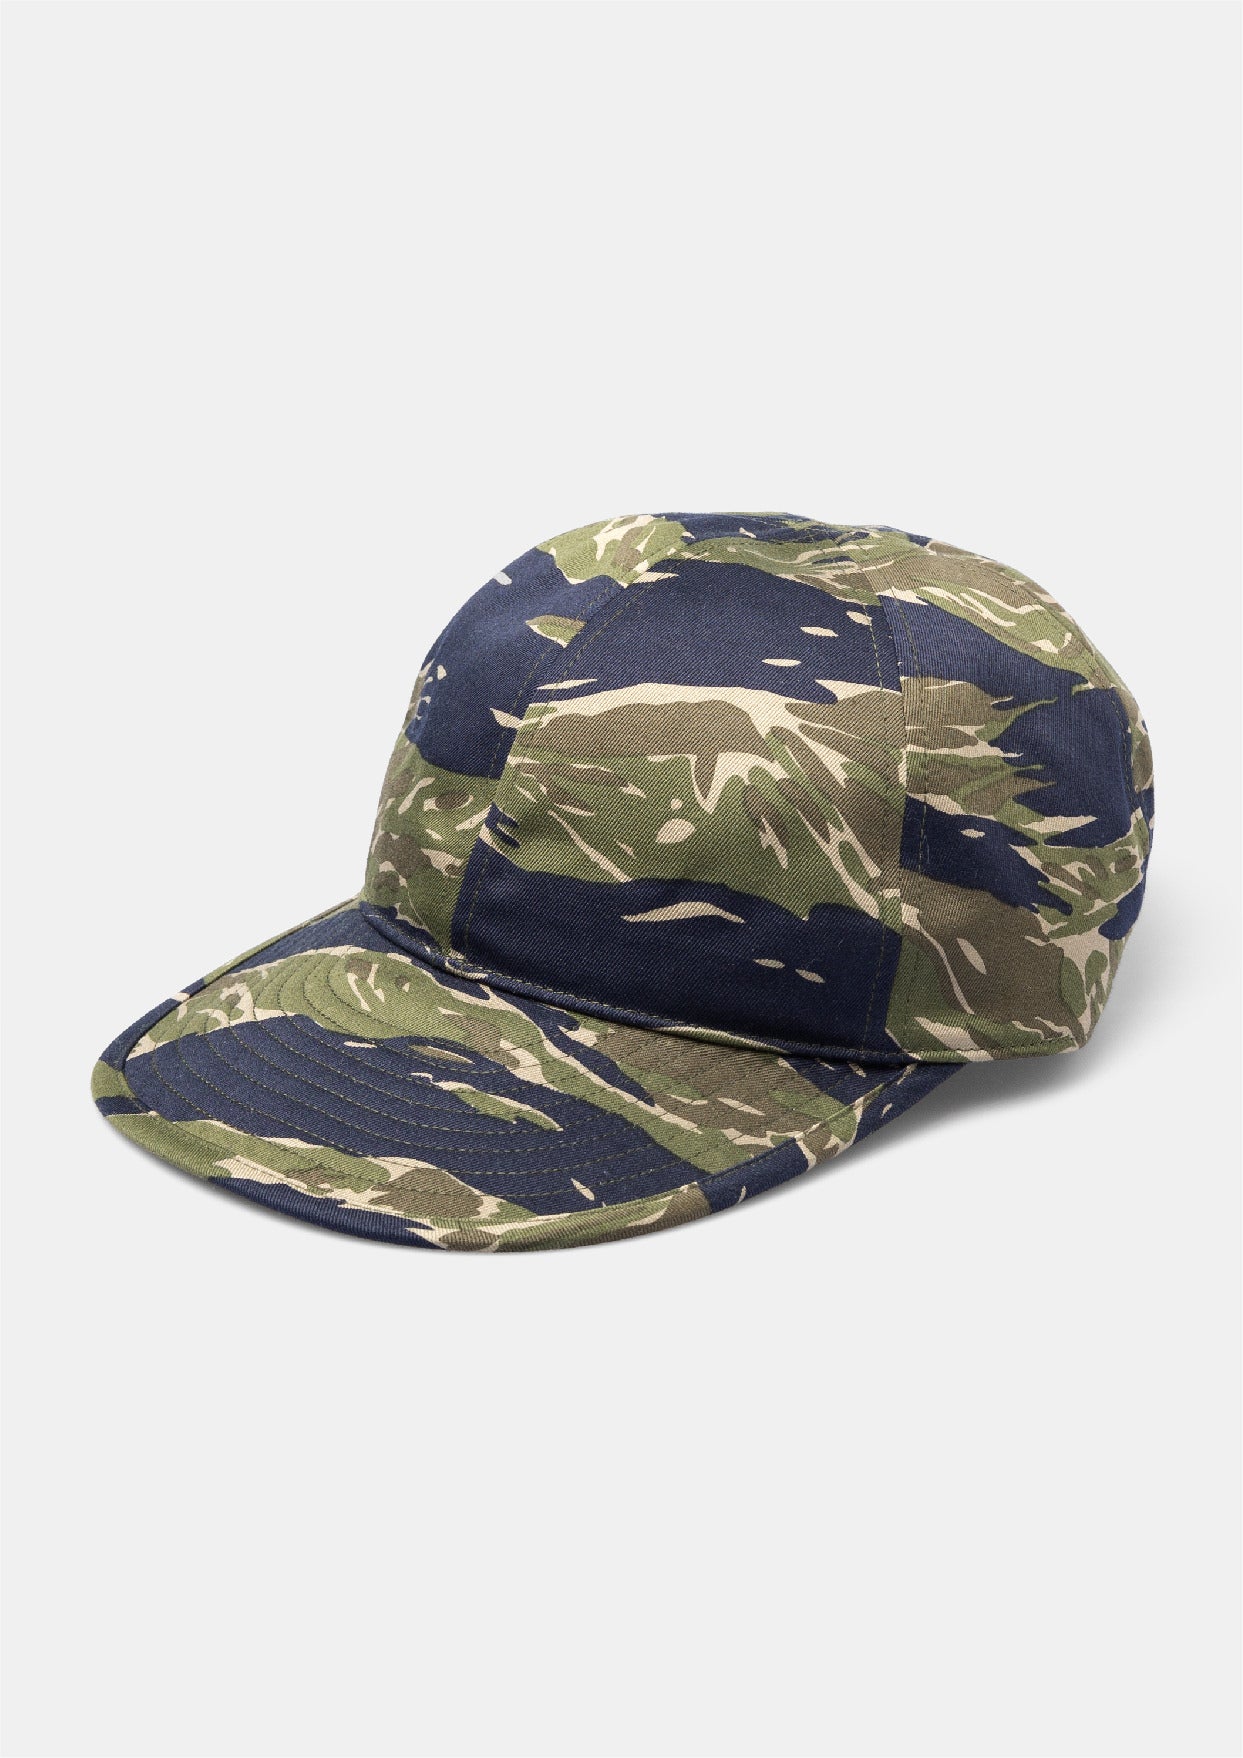 ARMY CAP – UNNAMED HEADWEAR